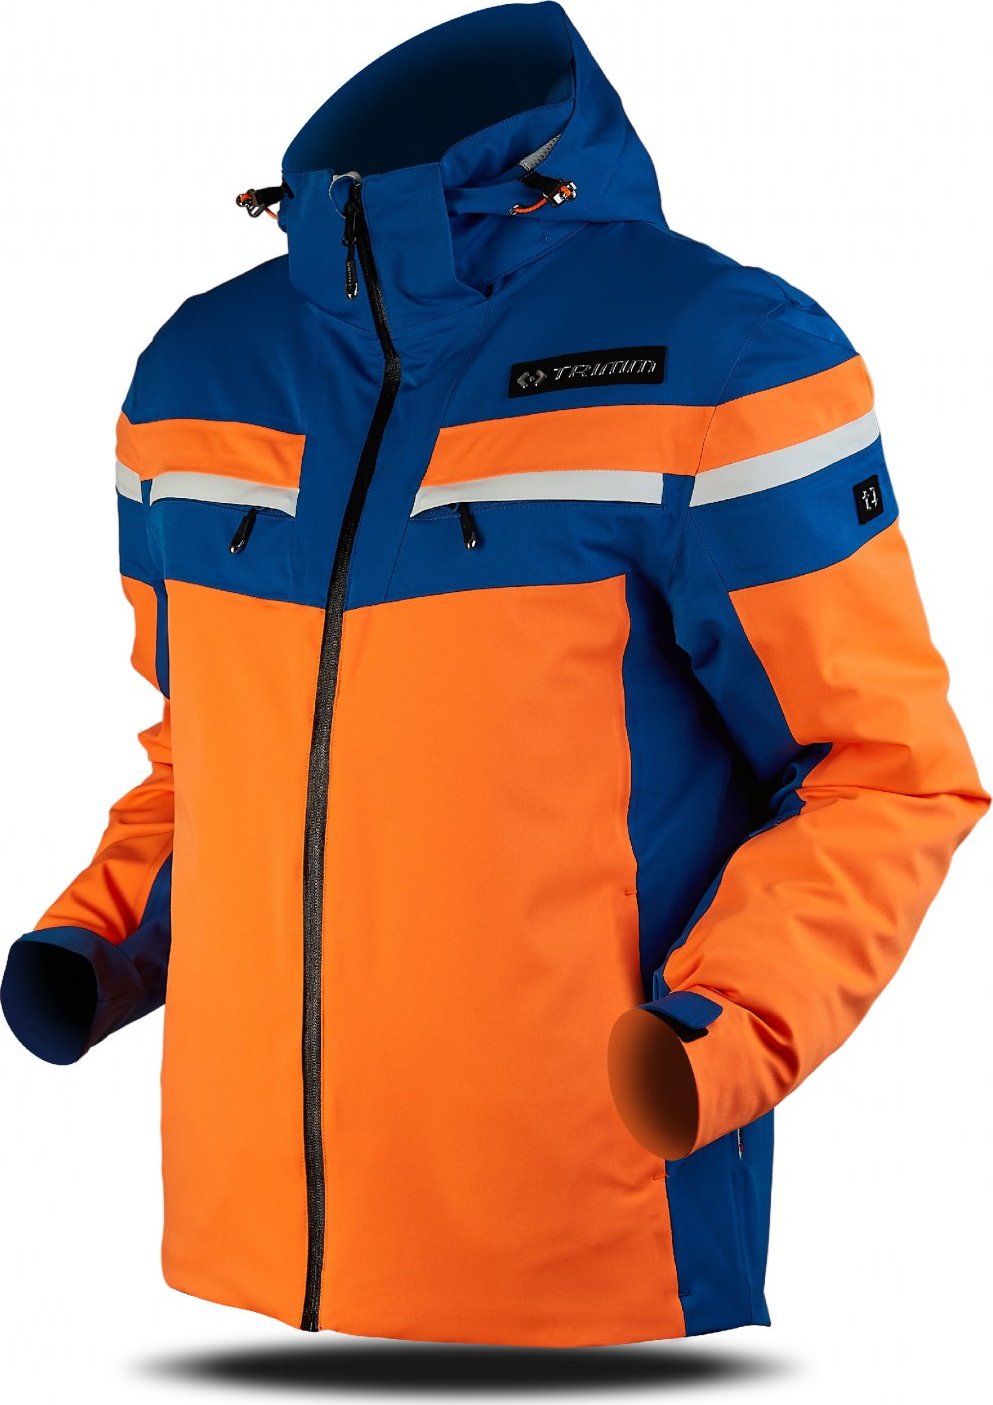 Pánská lyžařská bunda TRIMM Fusion oranžová Velikost: S, Barva: signal orange/navy/white